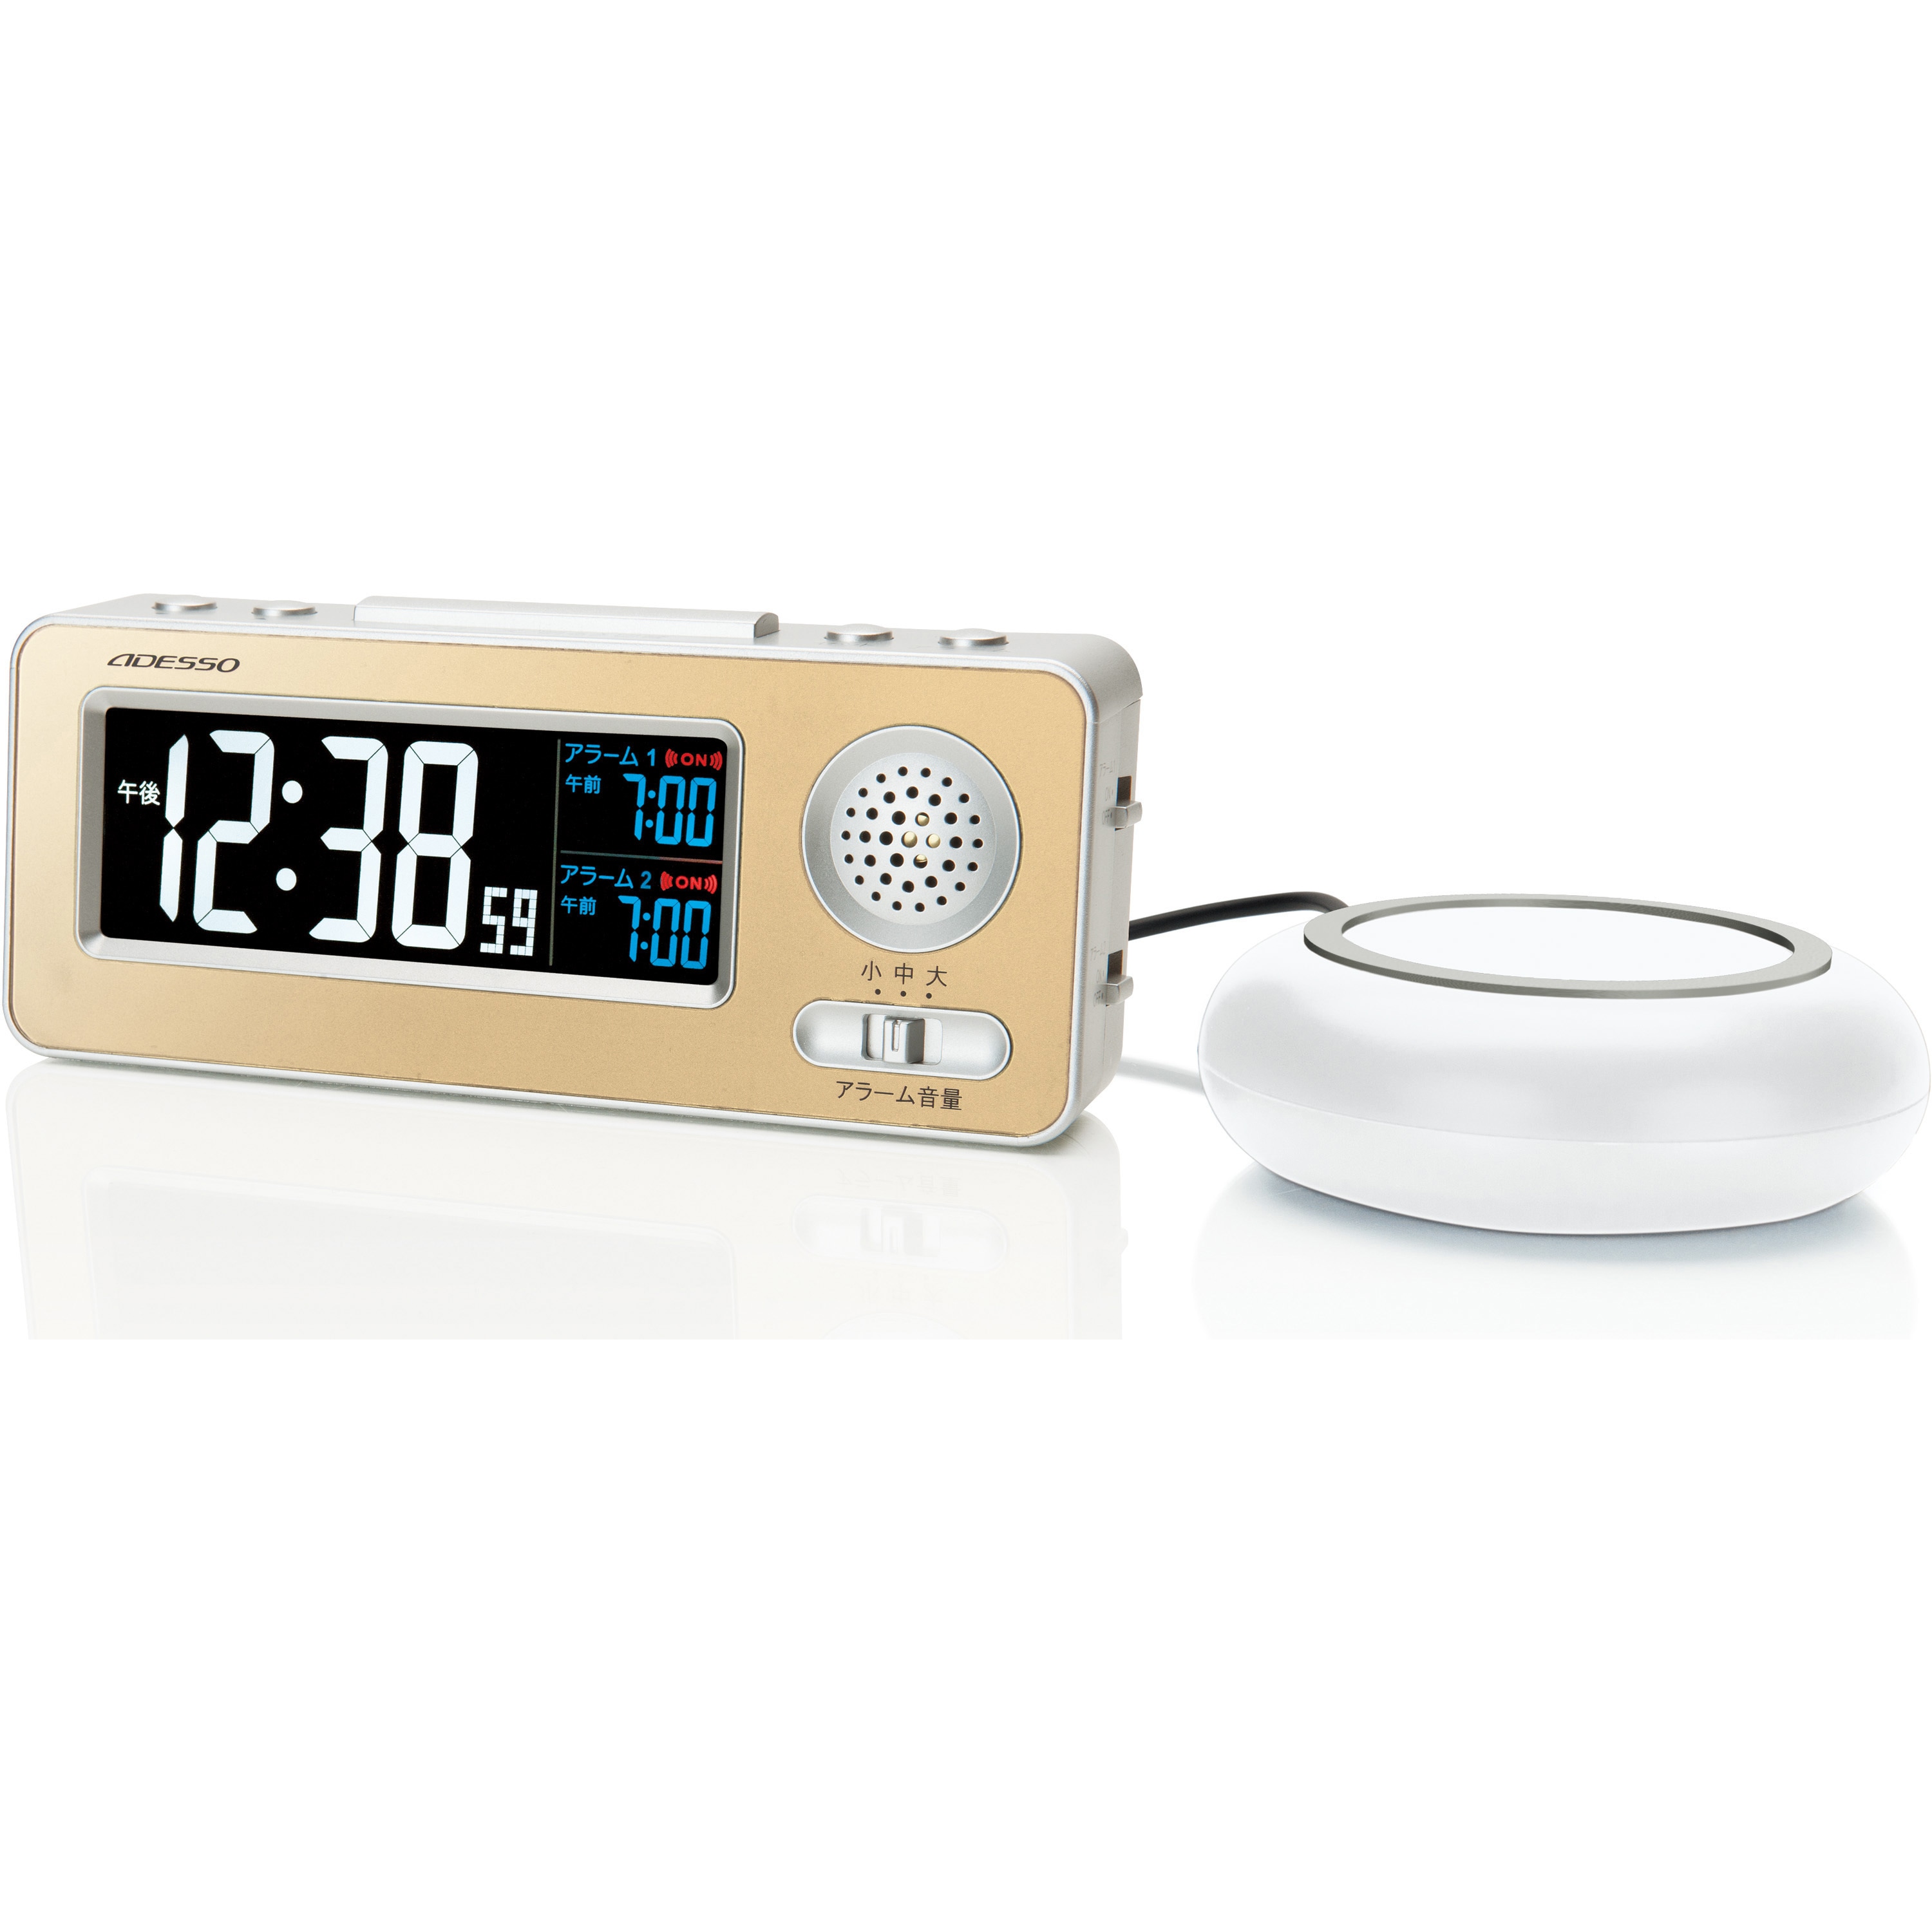 ADESSO(アデッソ) 目覚まし時計 振動 デジタル 電波時計 ダブルアラーム スヌーズ機能付き ブラック 電波時計